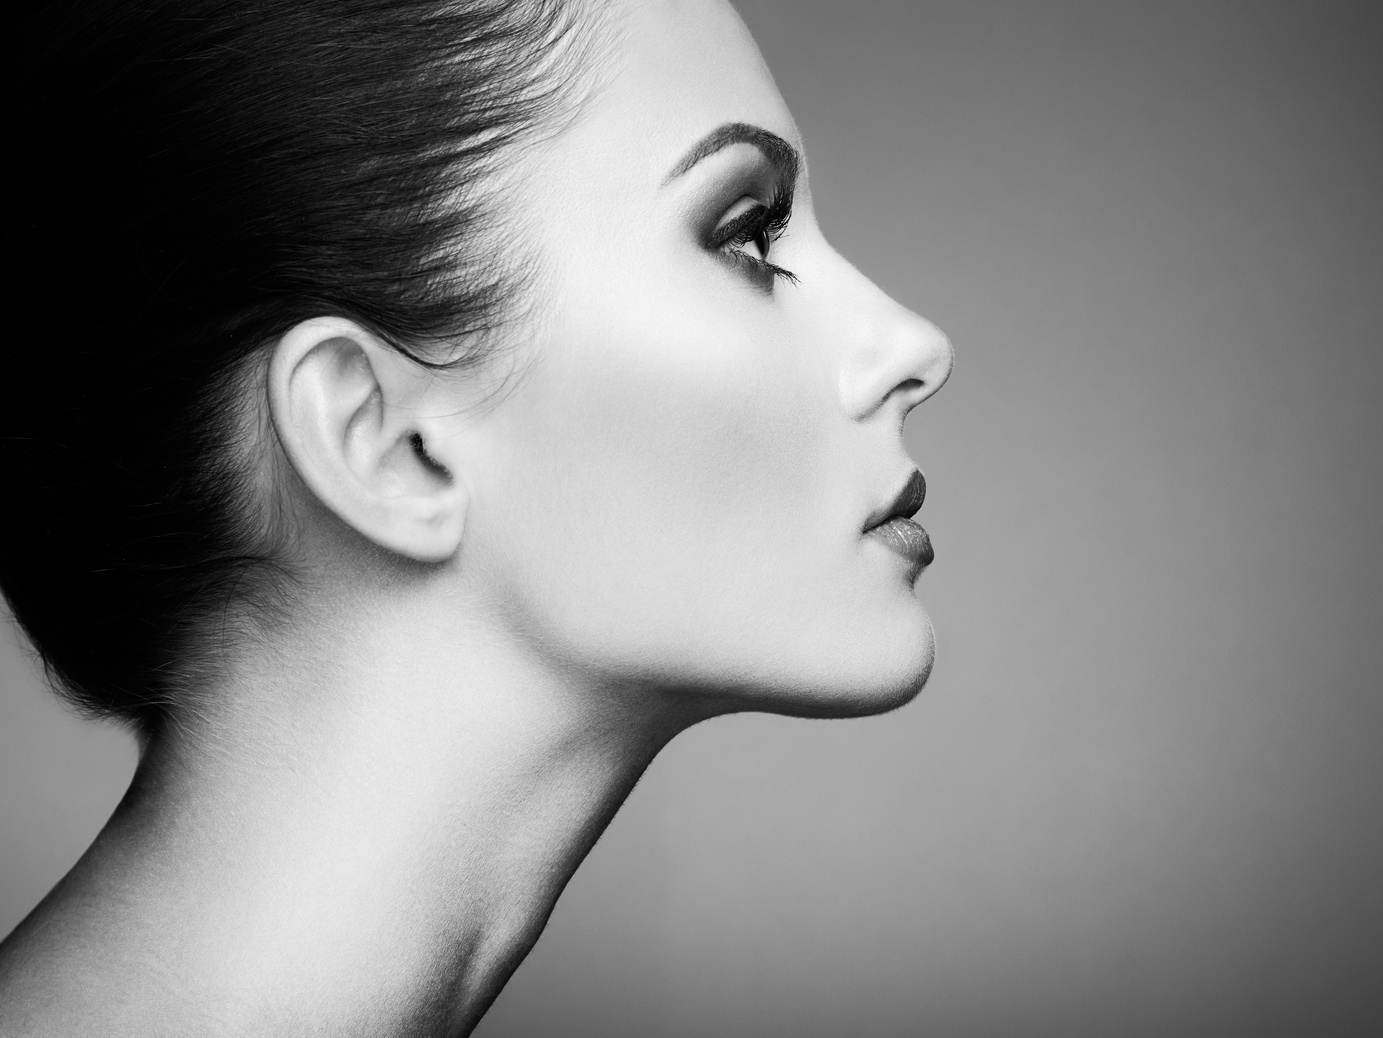 Beautiful Woman Face Portrait Monochrome Photo 